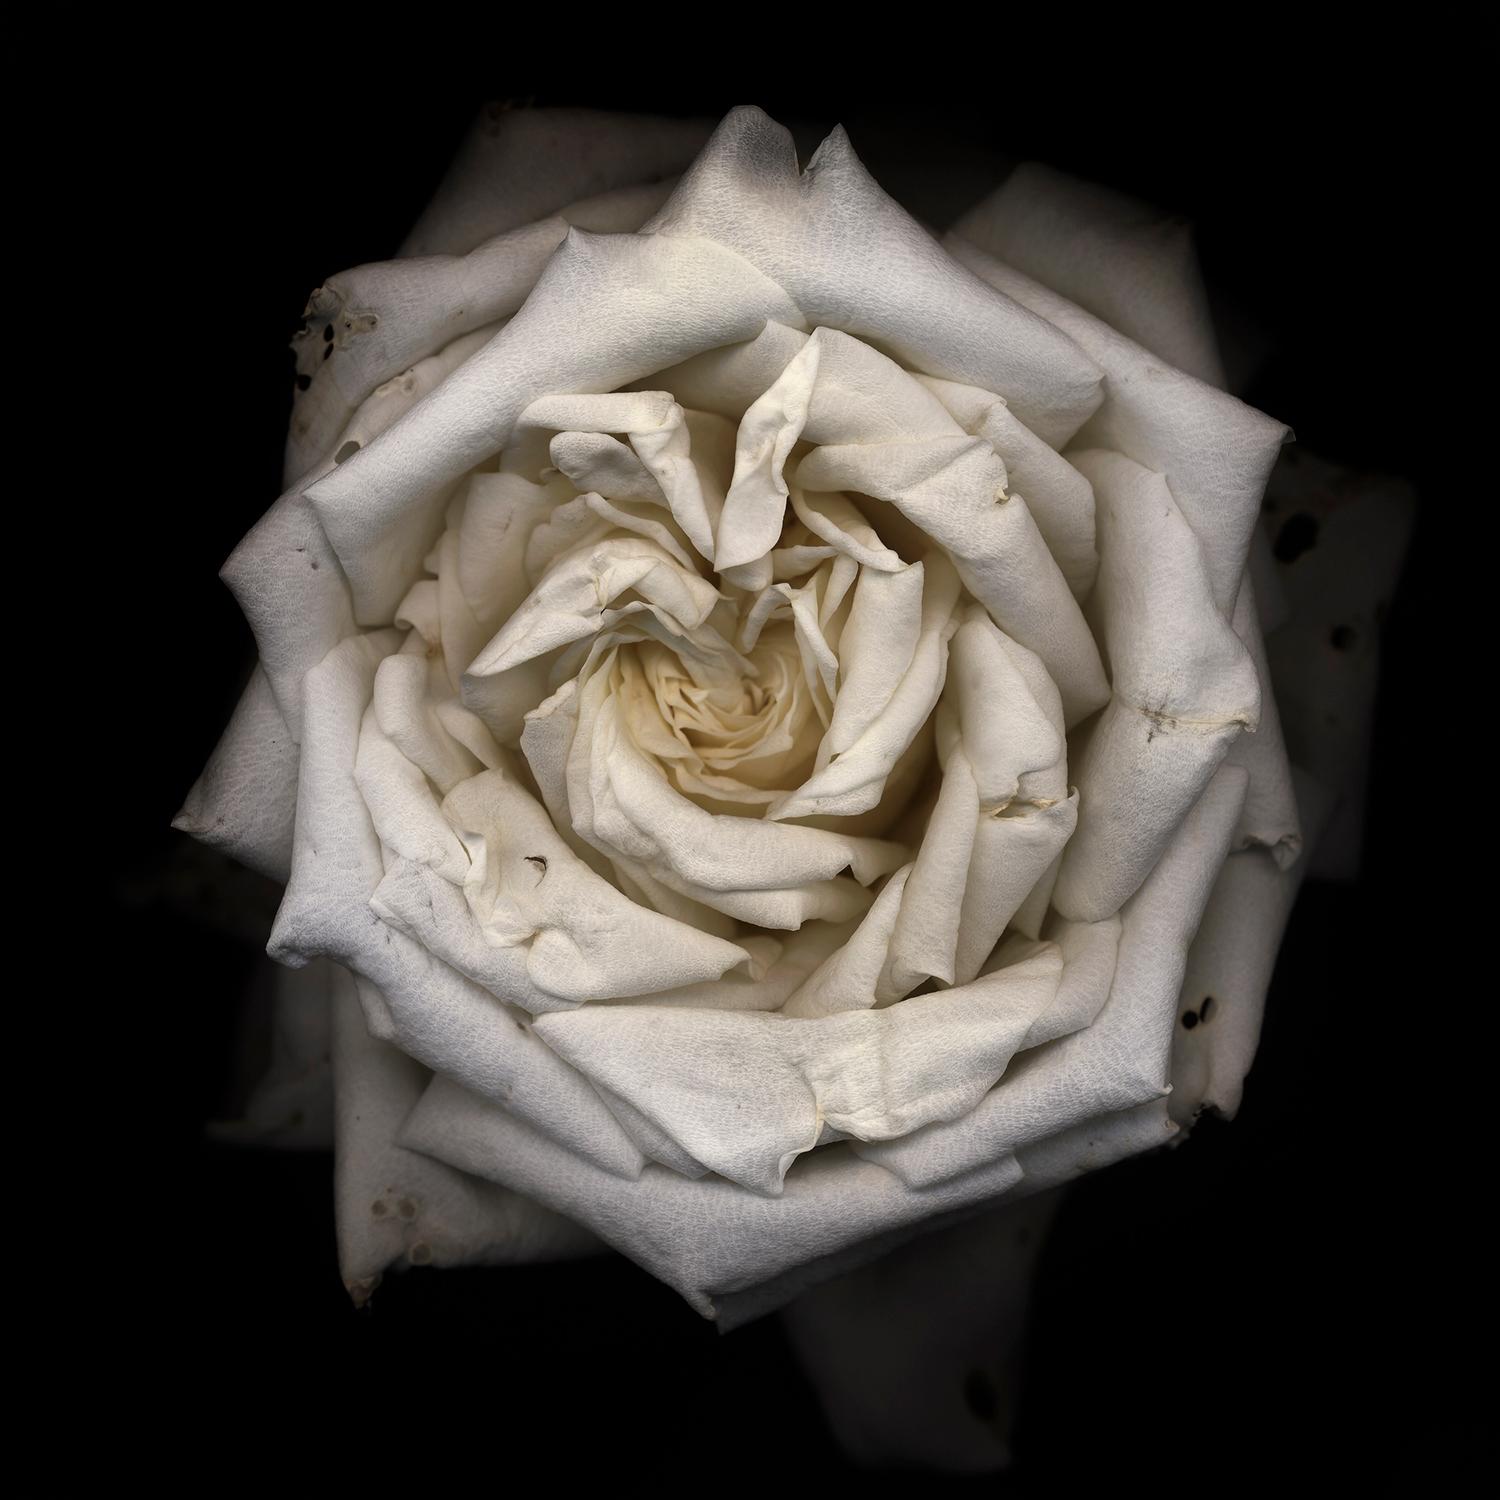 Chad Kleitsch – Blume ohne Titel # 09, Fotografie 2001, nach dem Druck gedruckt